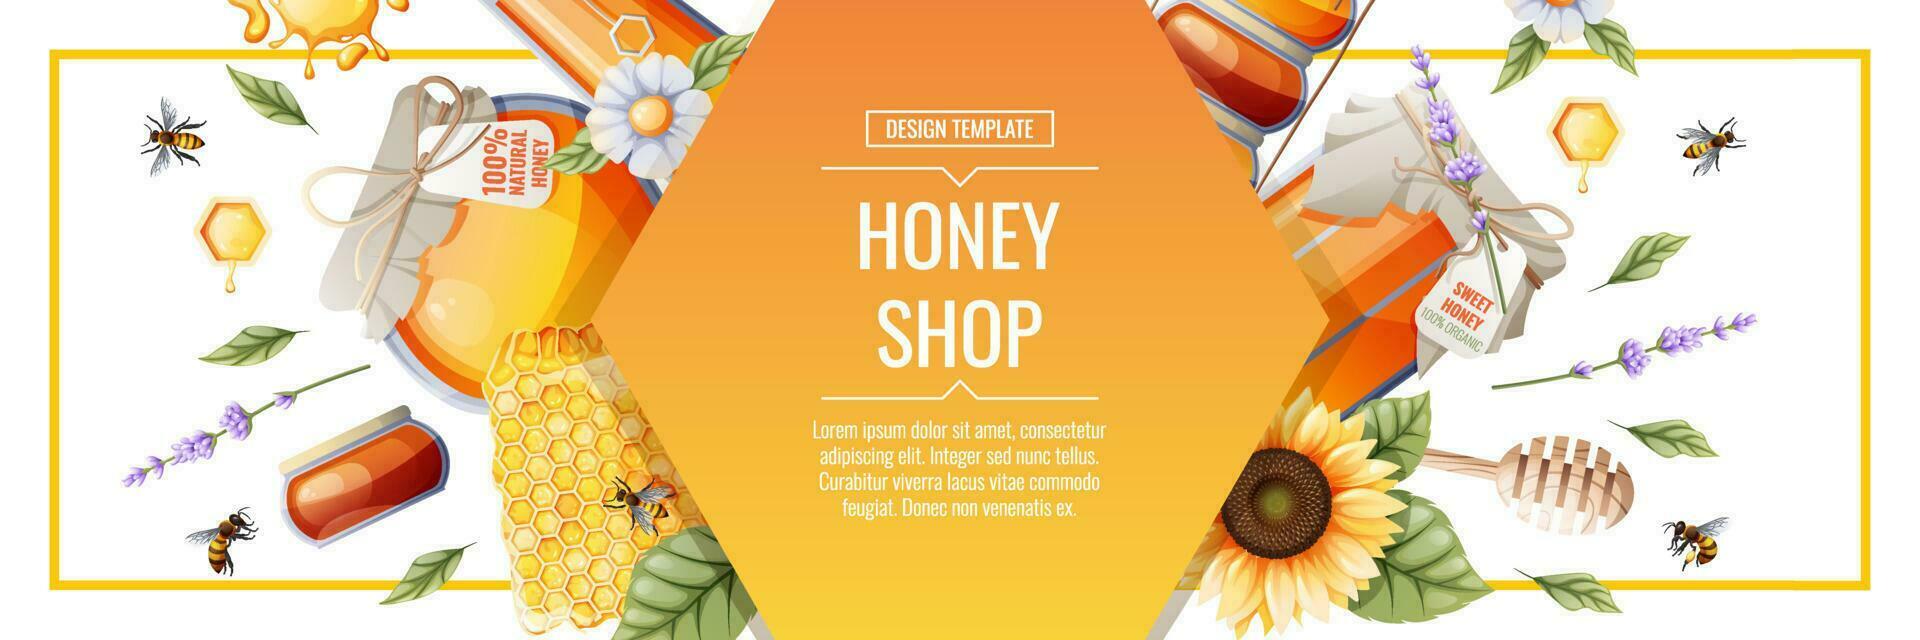 banier sjabloon met honing producten. honing winkel.illustratie van een pot van honing, honingraten, bijen, bloemen. ontwerp voor label, folder, poster, reclame. vector